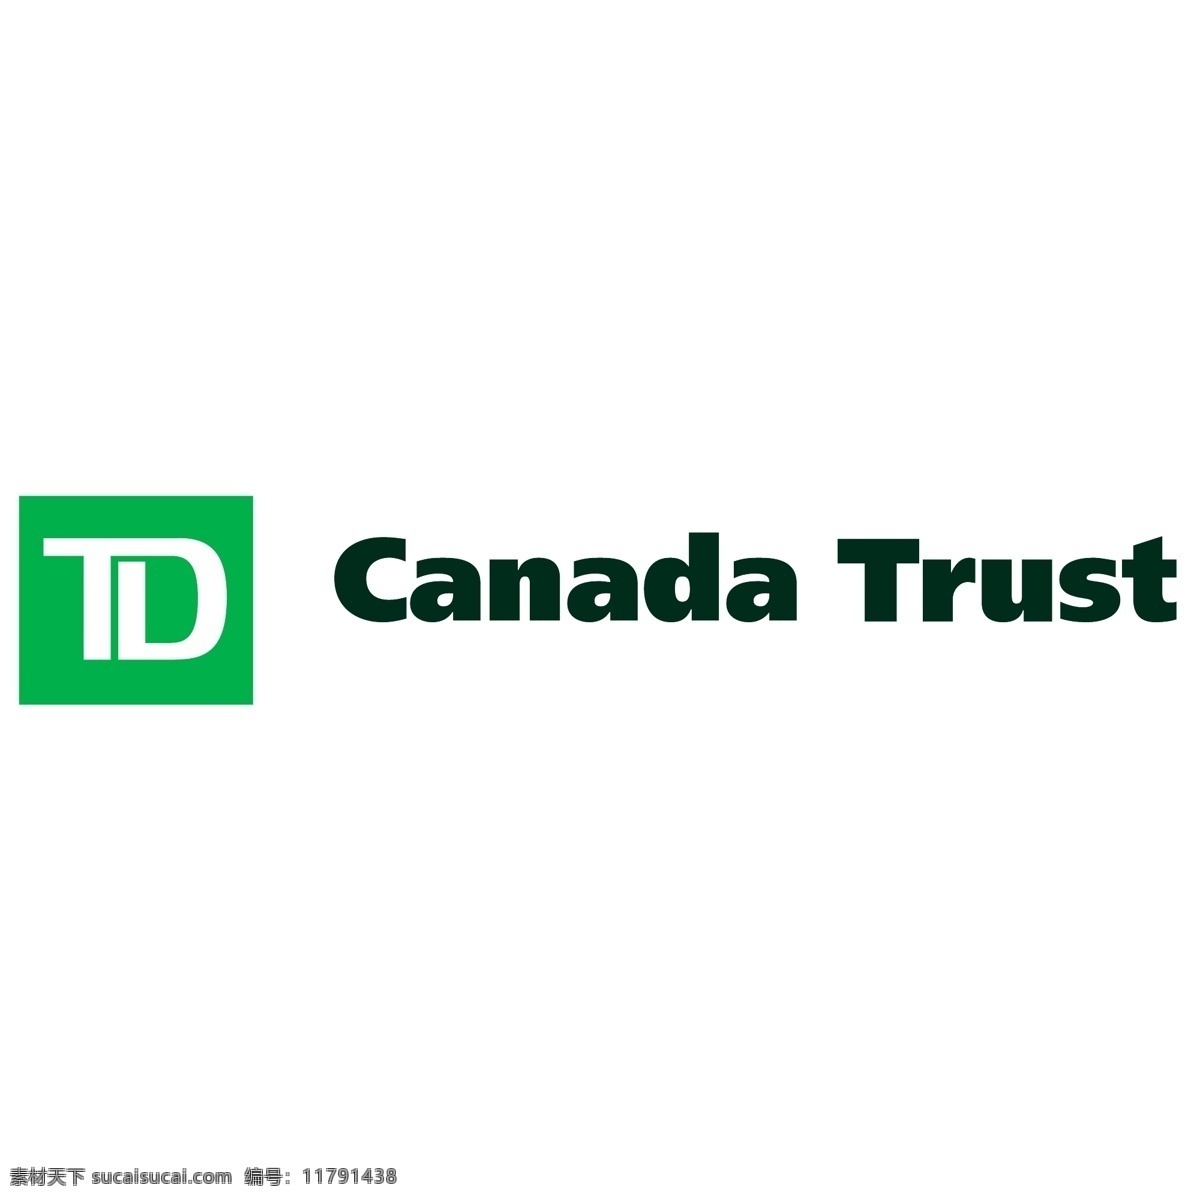 td 加拿大 信托 自由 标志 标识 psd源文件 logo设计